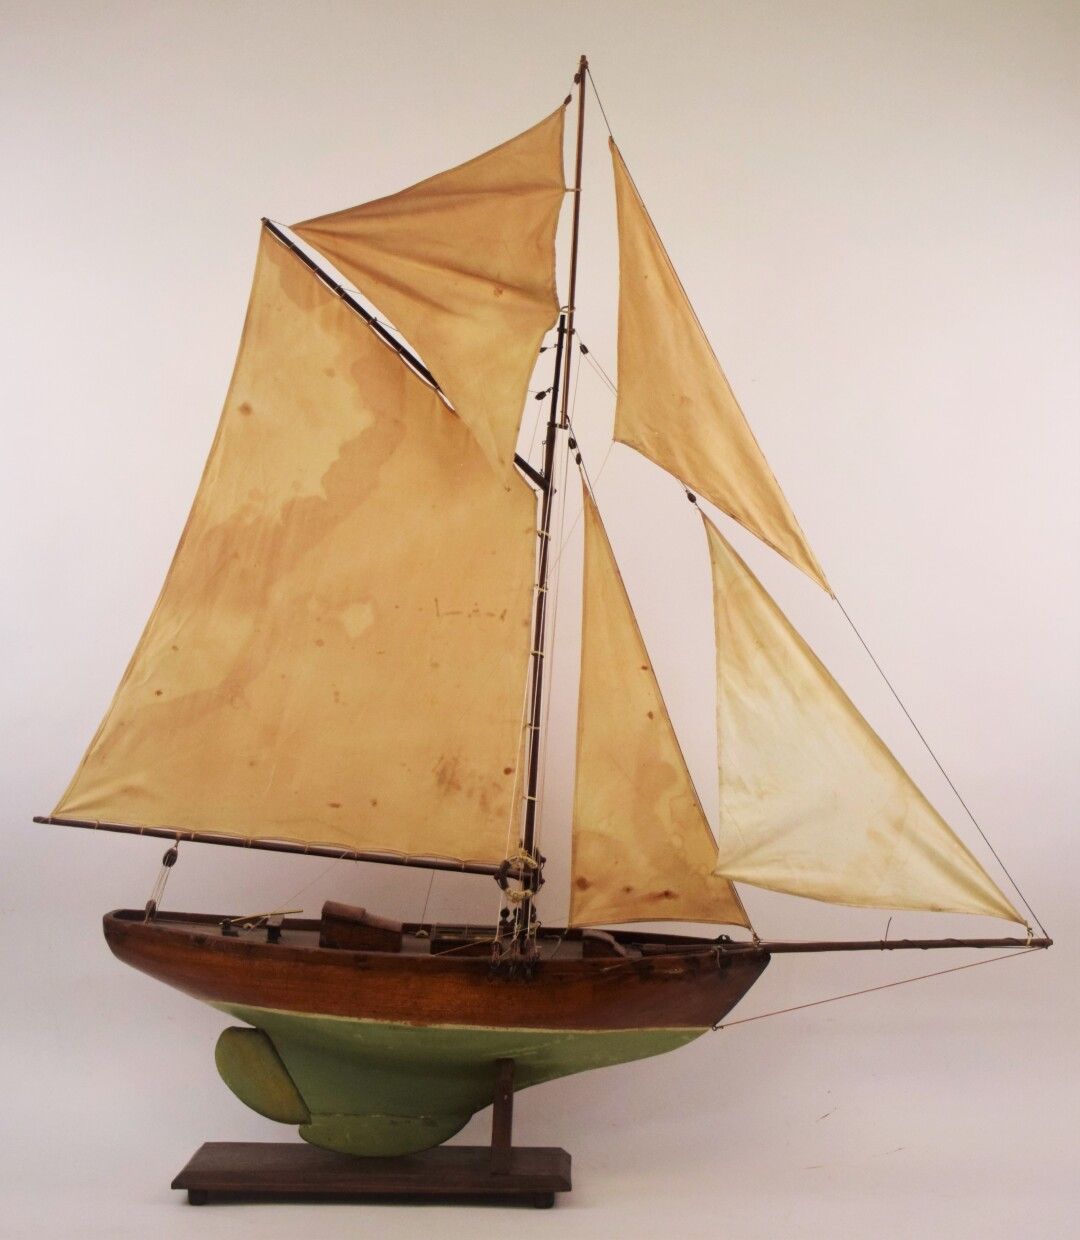 Null 带有索具的大型木制帆船模型

高度：-长度。